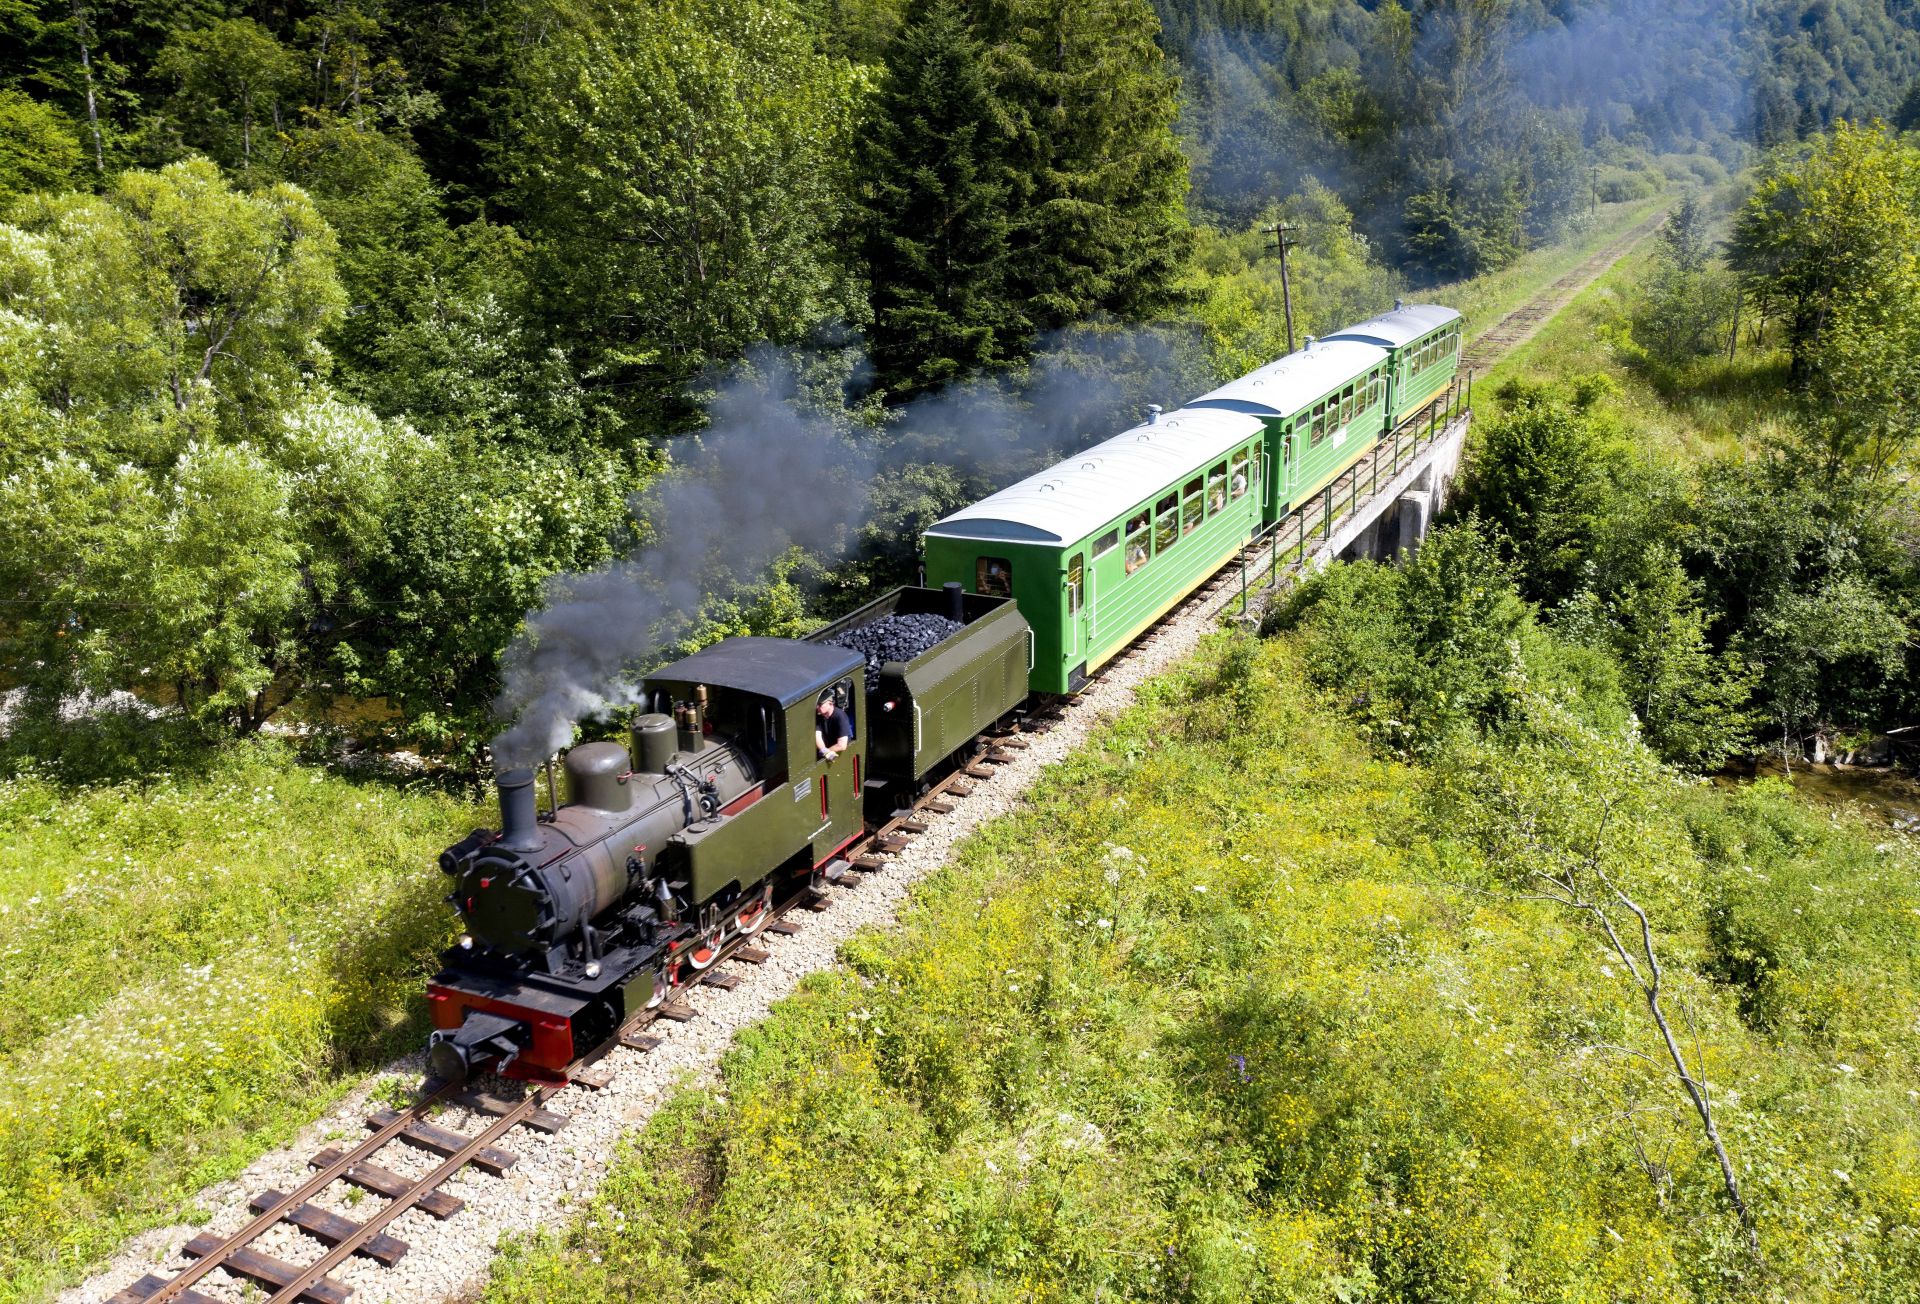 穿梭于森林的波兰老式蒸汽火车